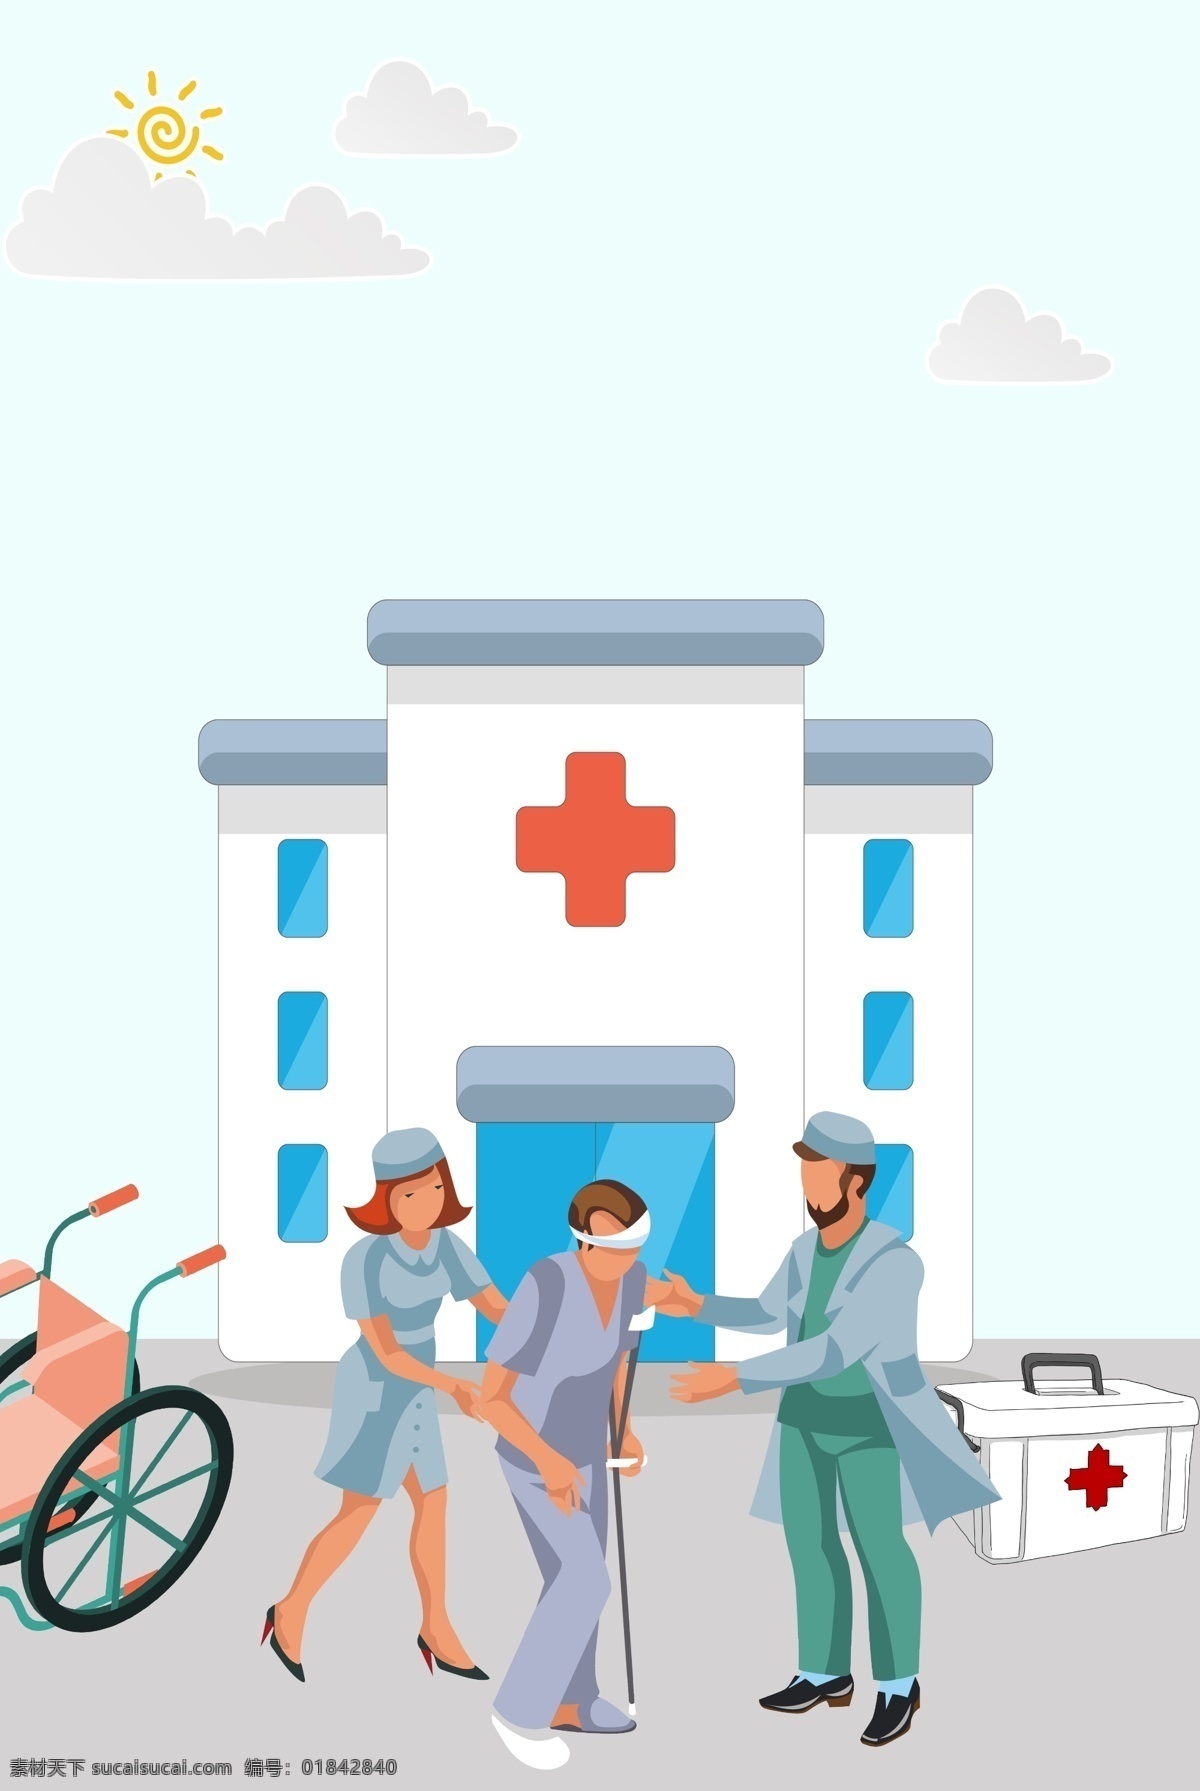 世界 急救 日 蓝色 医院 背景 世界急救日 医院背景 医生 护士 病人 看病 轮椅 医药箱